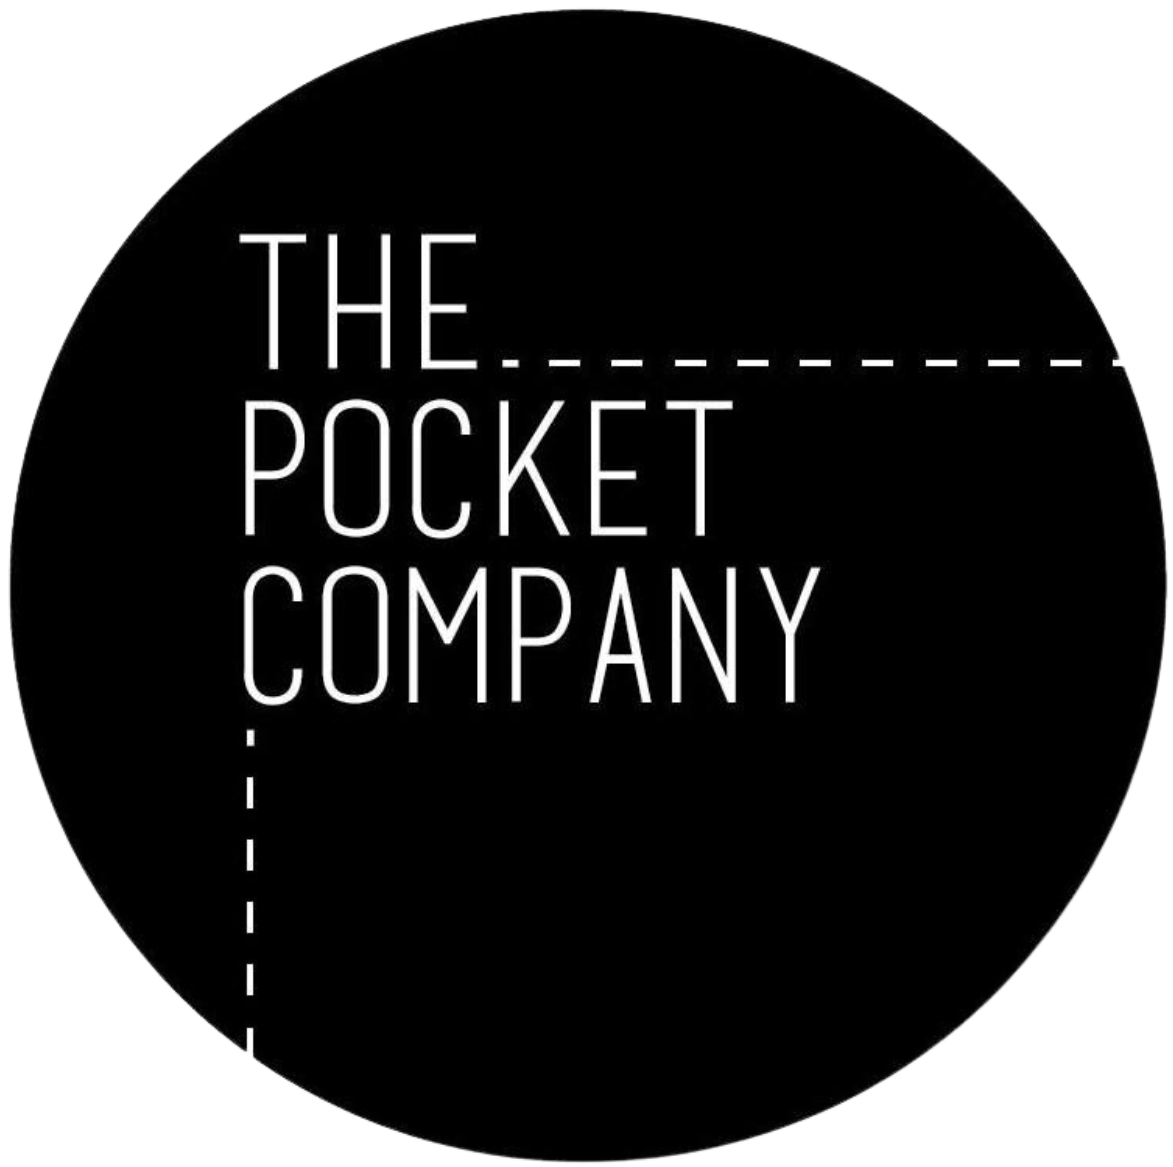 The Pocket Company